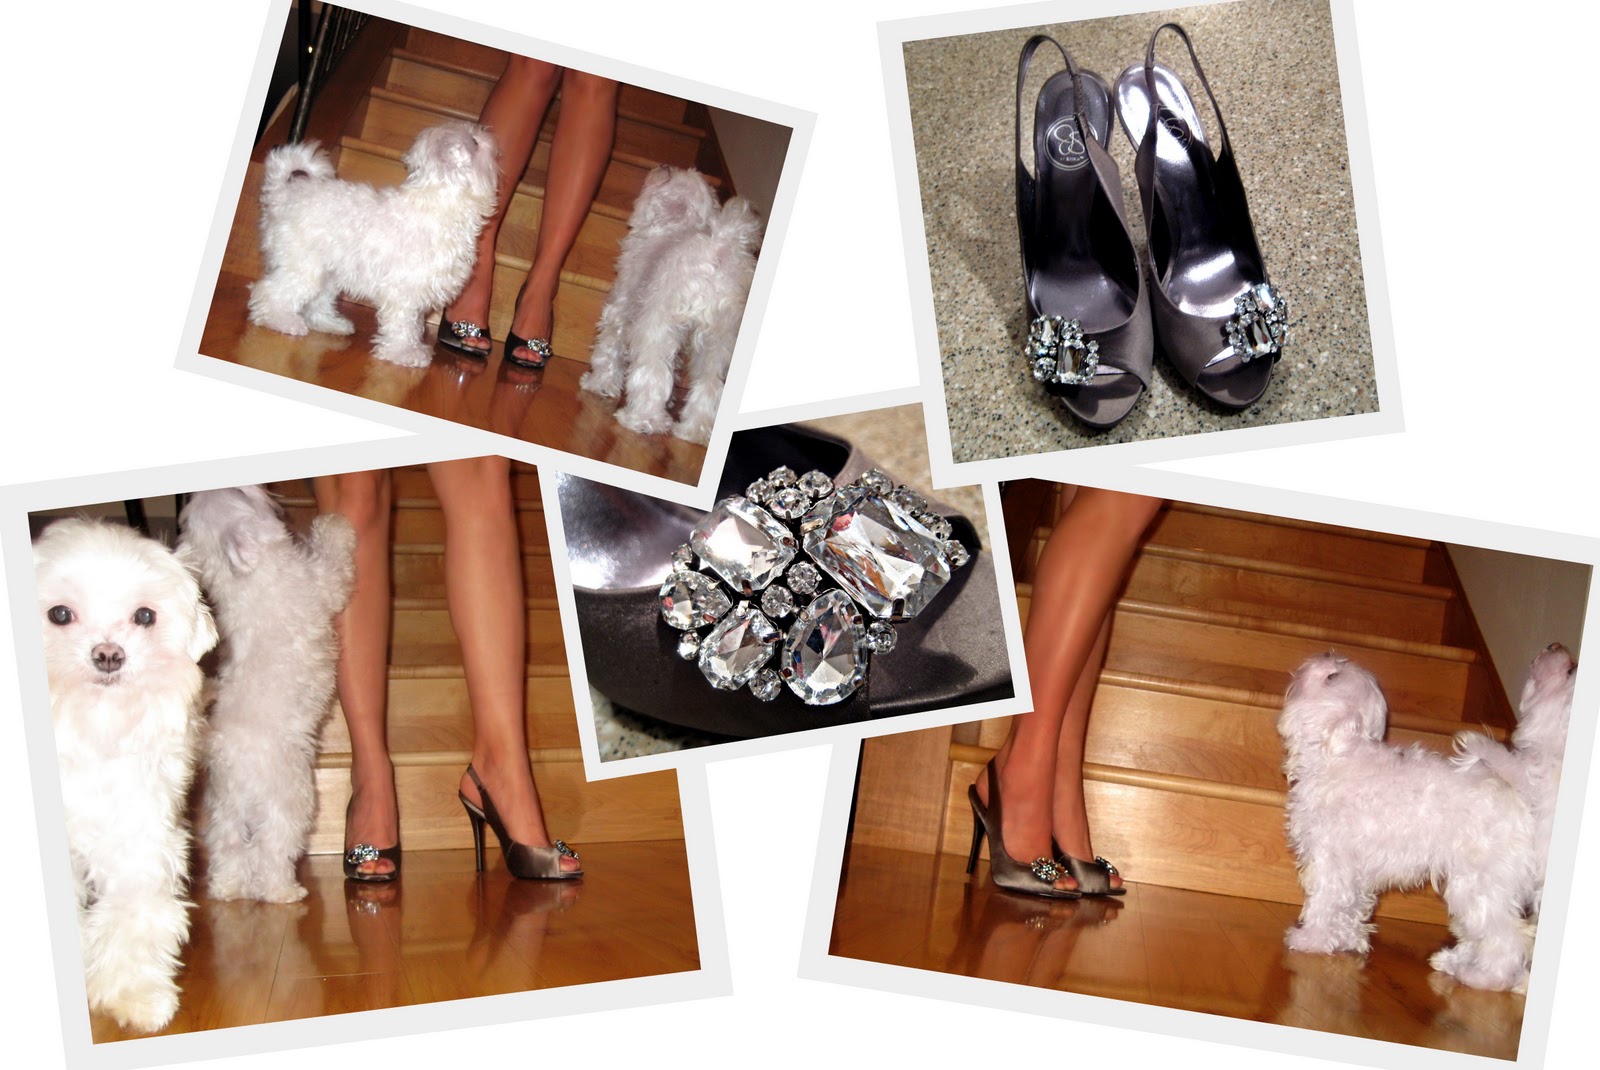 http://2.bp.blogspot.com/_FhopQJCeVu8/TUzClTUWiwI/AAAAAAAACo4/KSTLdHx9qMc/s1600/2011-01-21+Jessica+Simpson+Shoes.jpg